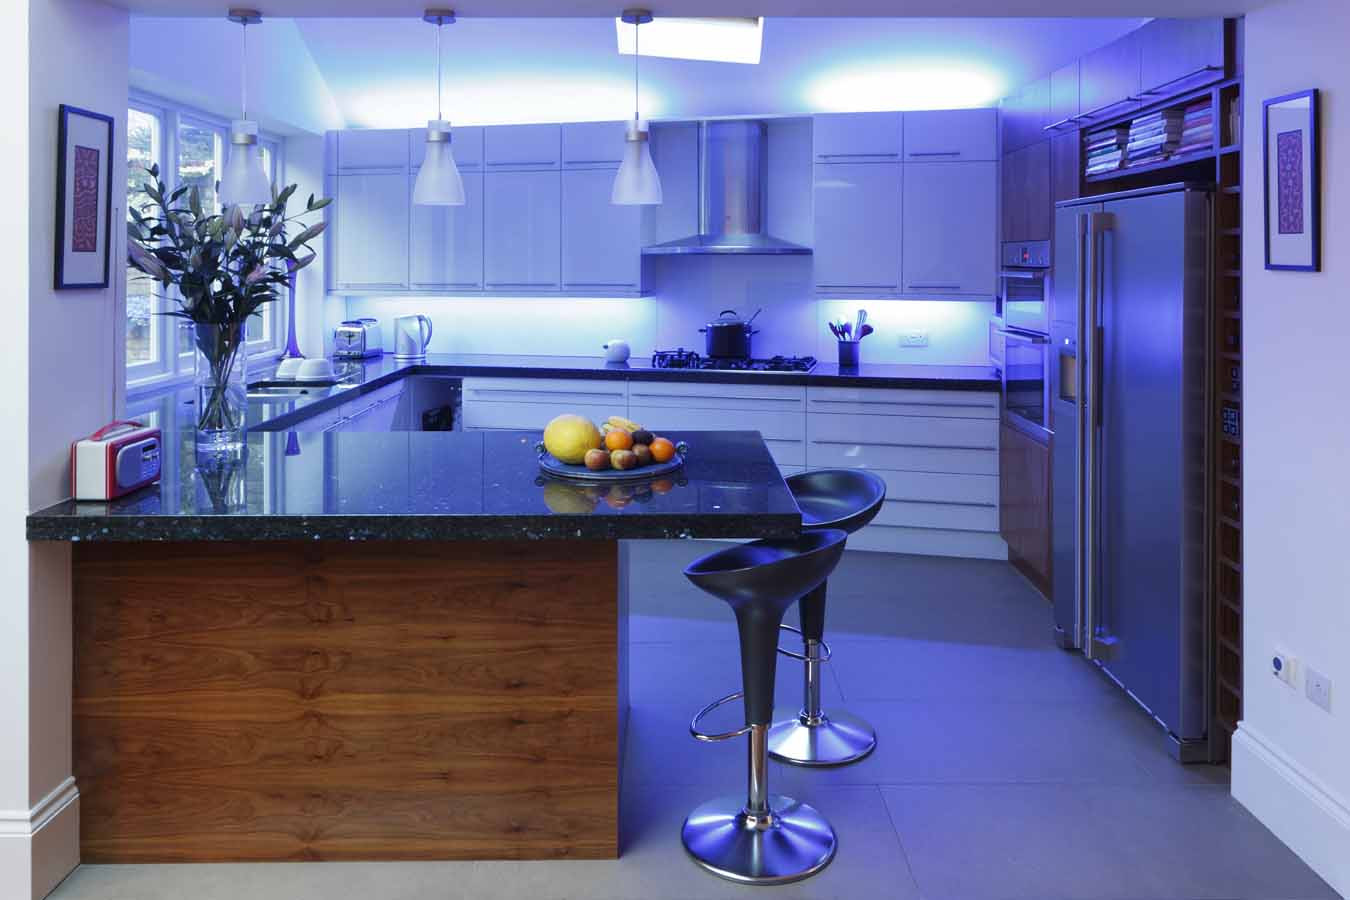 lowes led light for kitchen celing